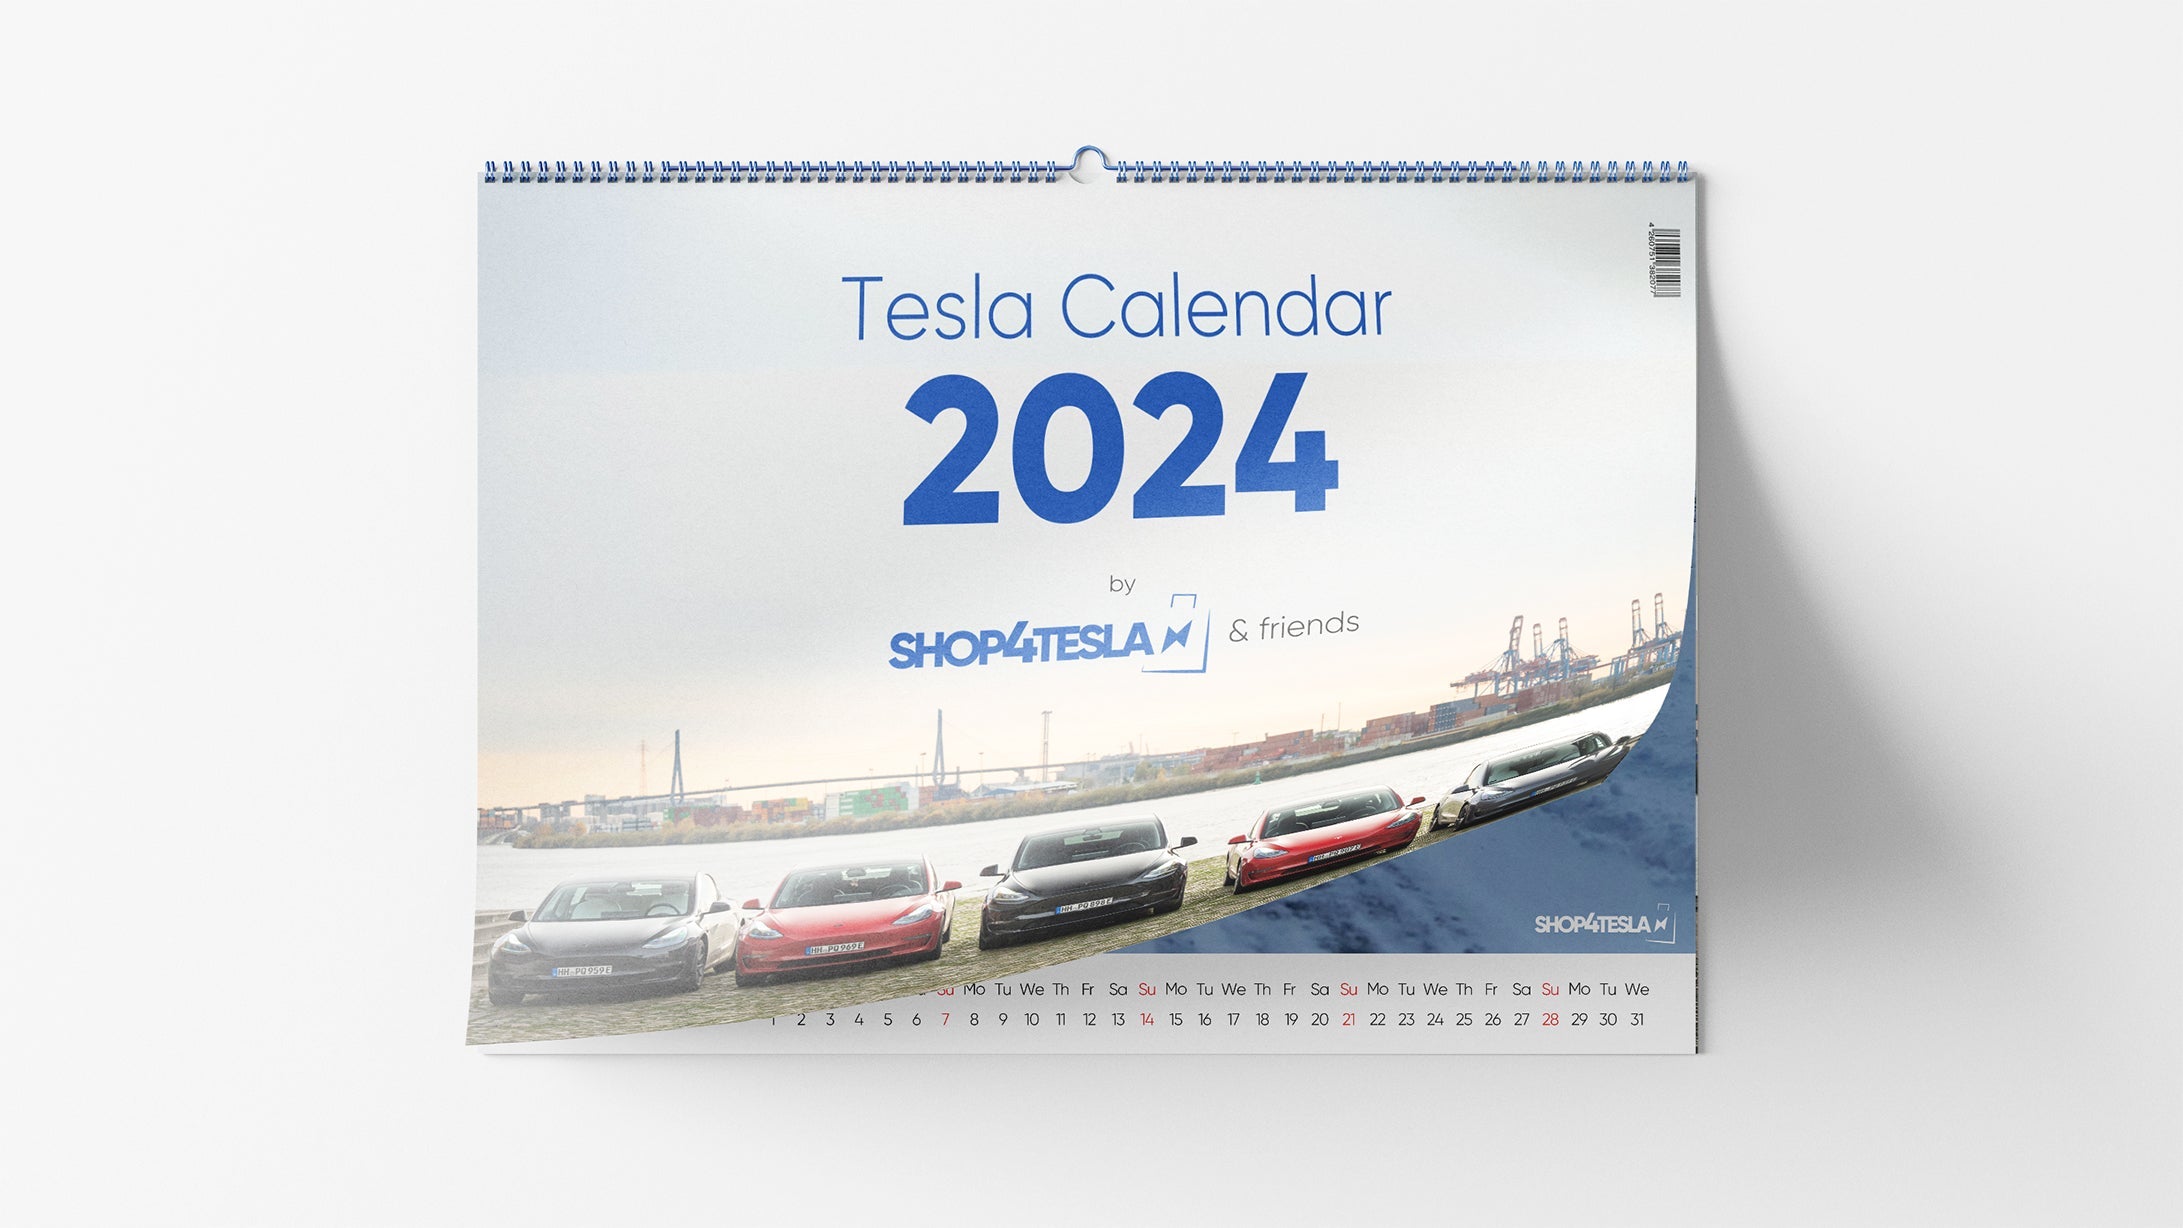 Tesla Kalender 2024 von Shop4Tesla & Friends - Shop4Tesla